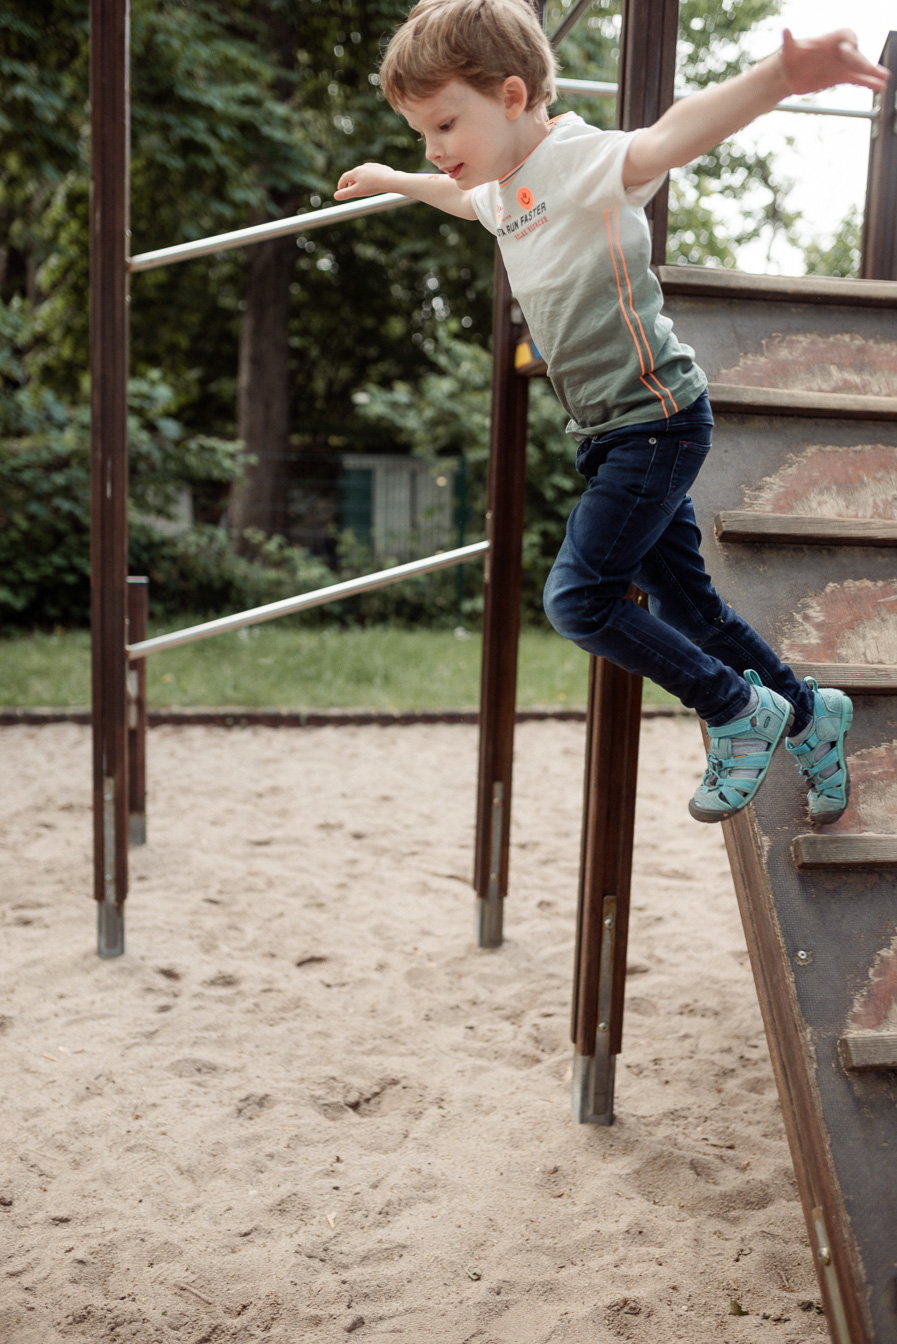 Kindergartenkind springt vom Klettergerüst beim Fototag für moderne Kitafotos